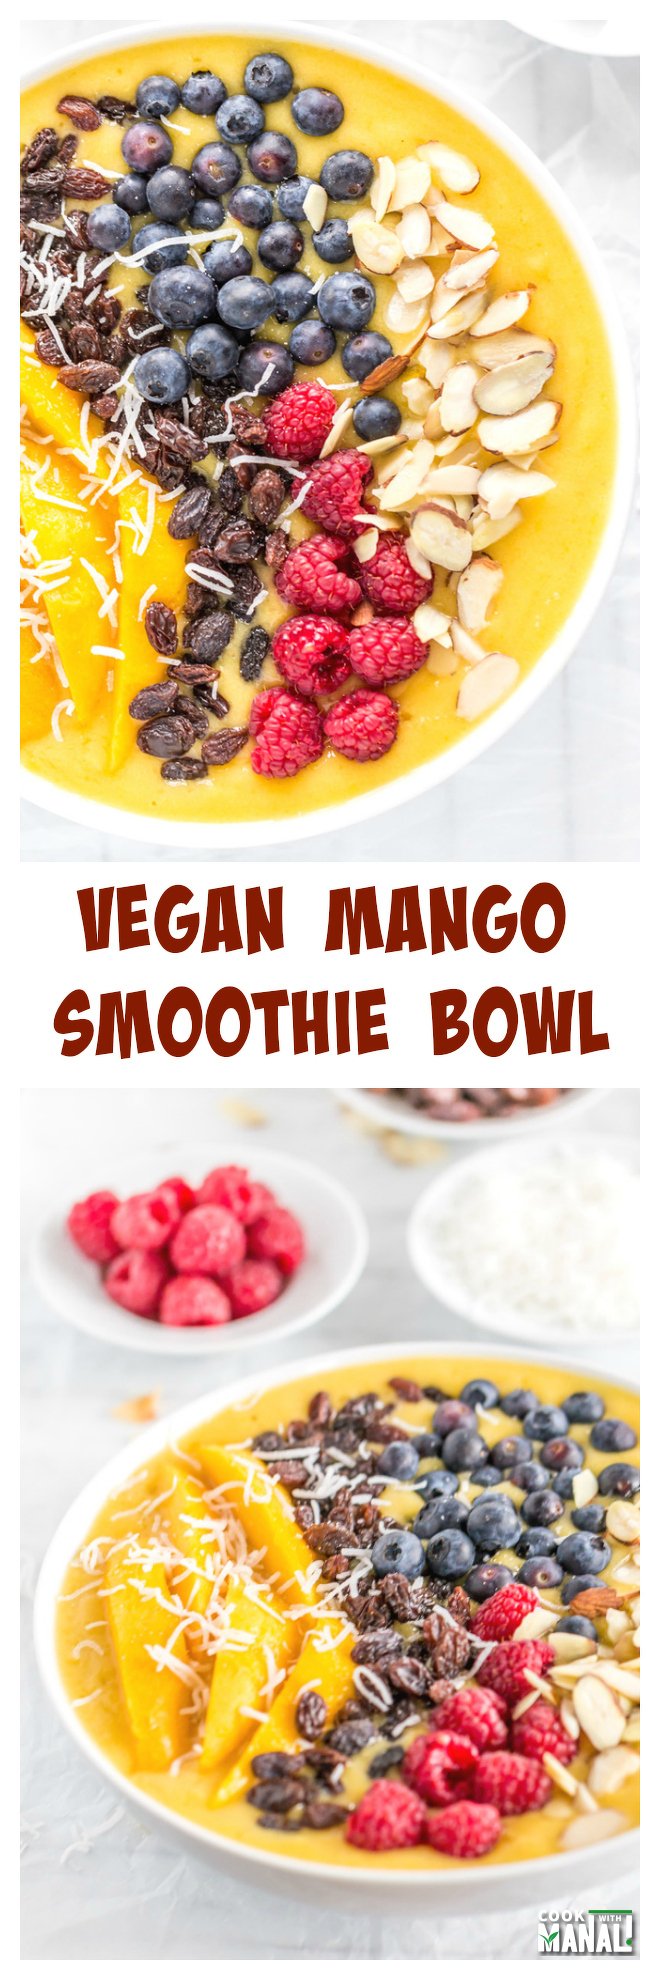 Vegan Mango Smoothie Bowl Collage